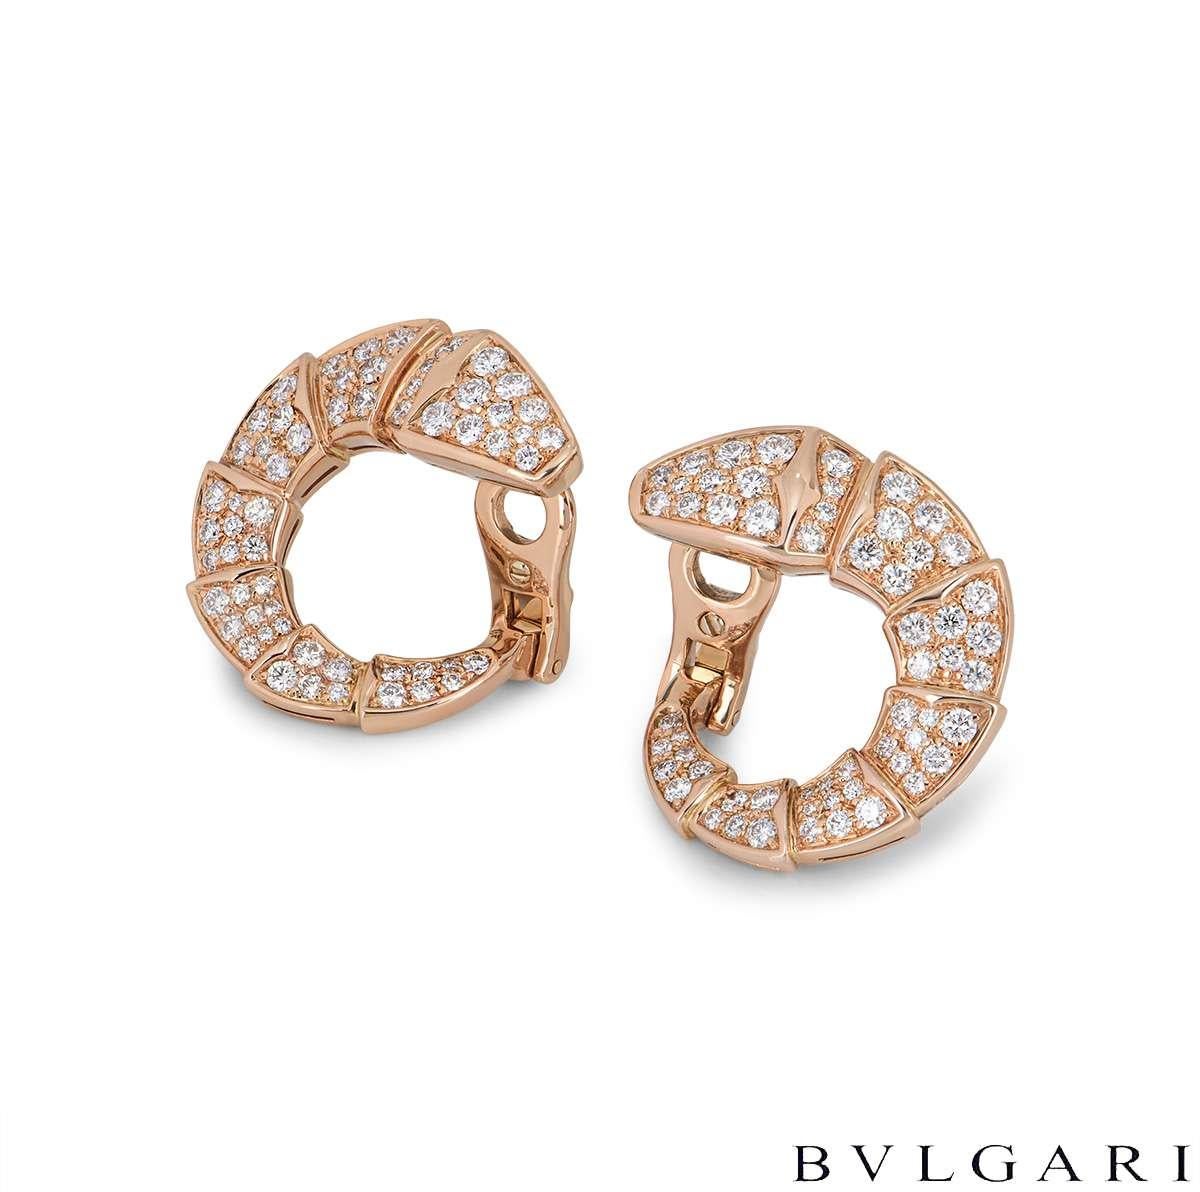 Ein Paar Diamantohrringe aus 18 Karat Roségold von Bvlgari aus der Kollektion Serpenti. Die Ohrringe haben die Form der ikonischen Bvlgari Serpenti-Schlange und sind mit runden Diamanten im Brillantschliff besetzt, die über den gesamten, sich